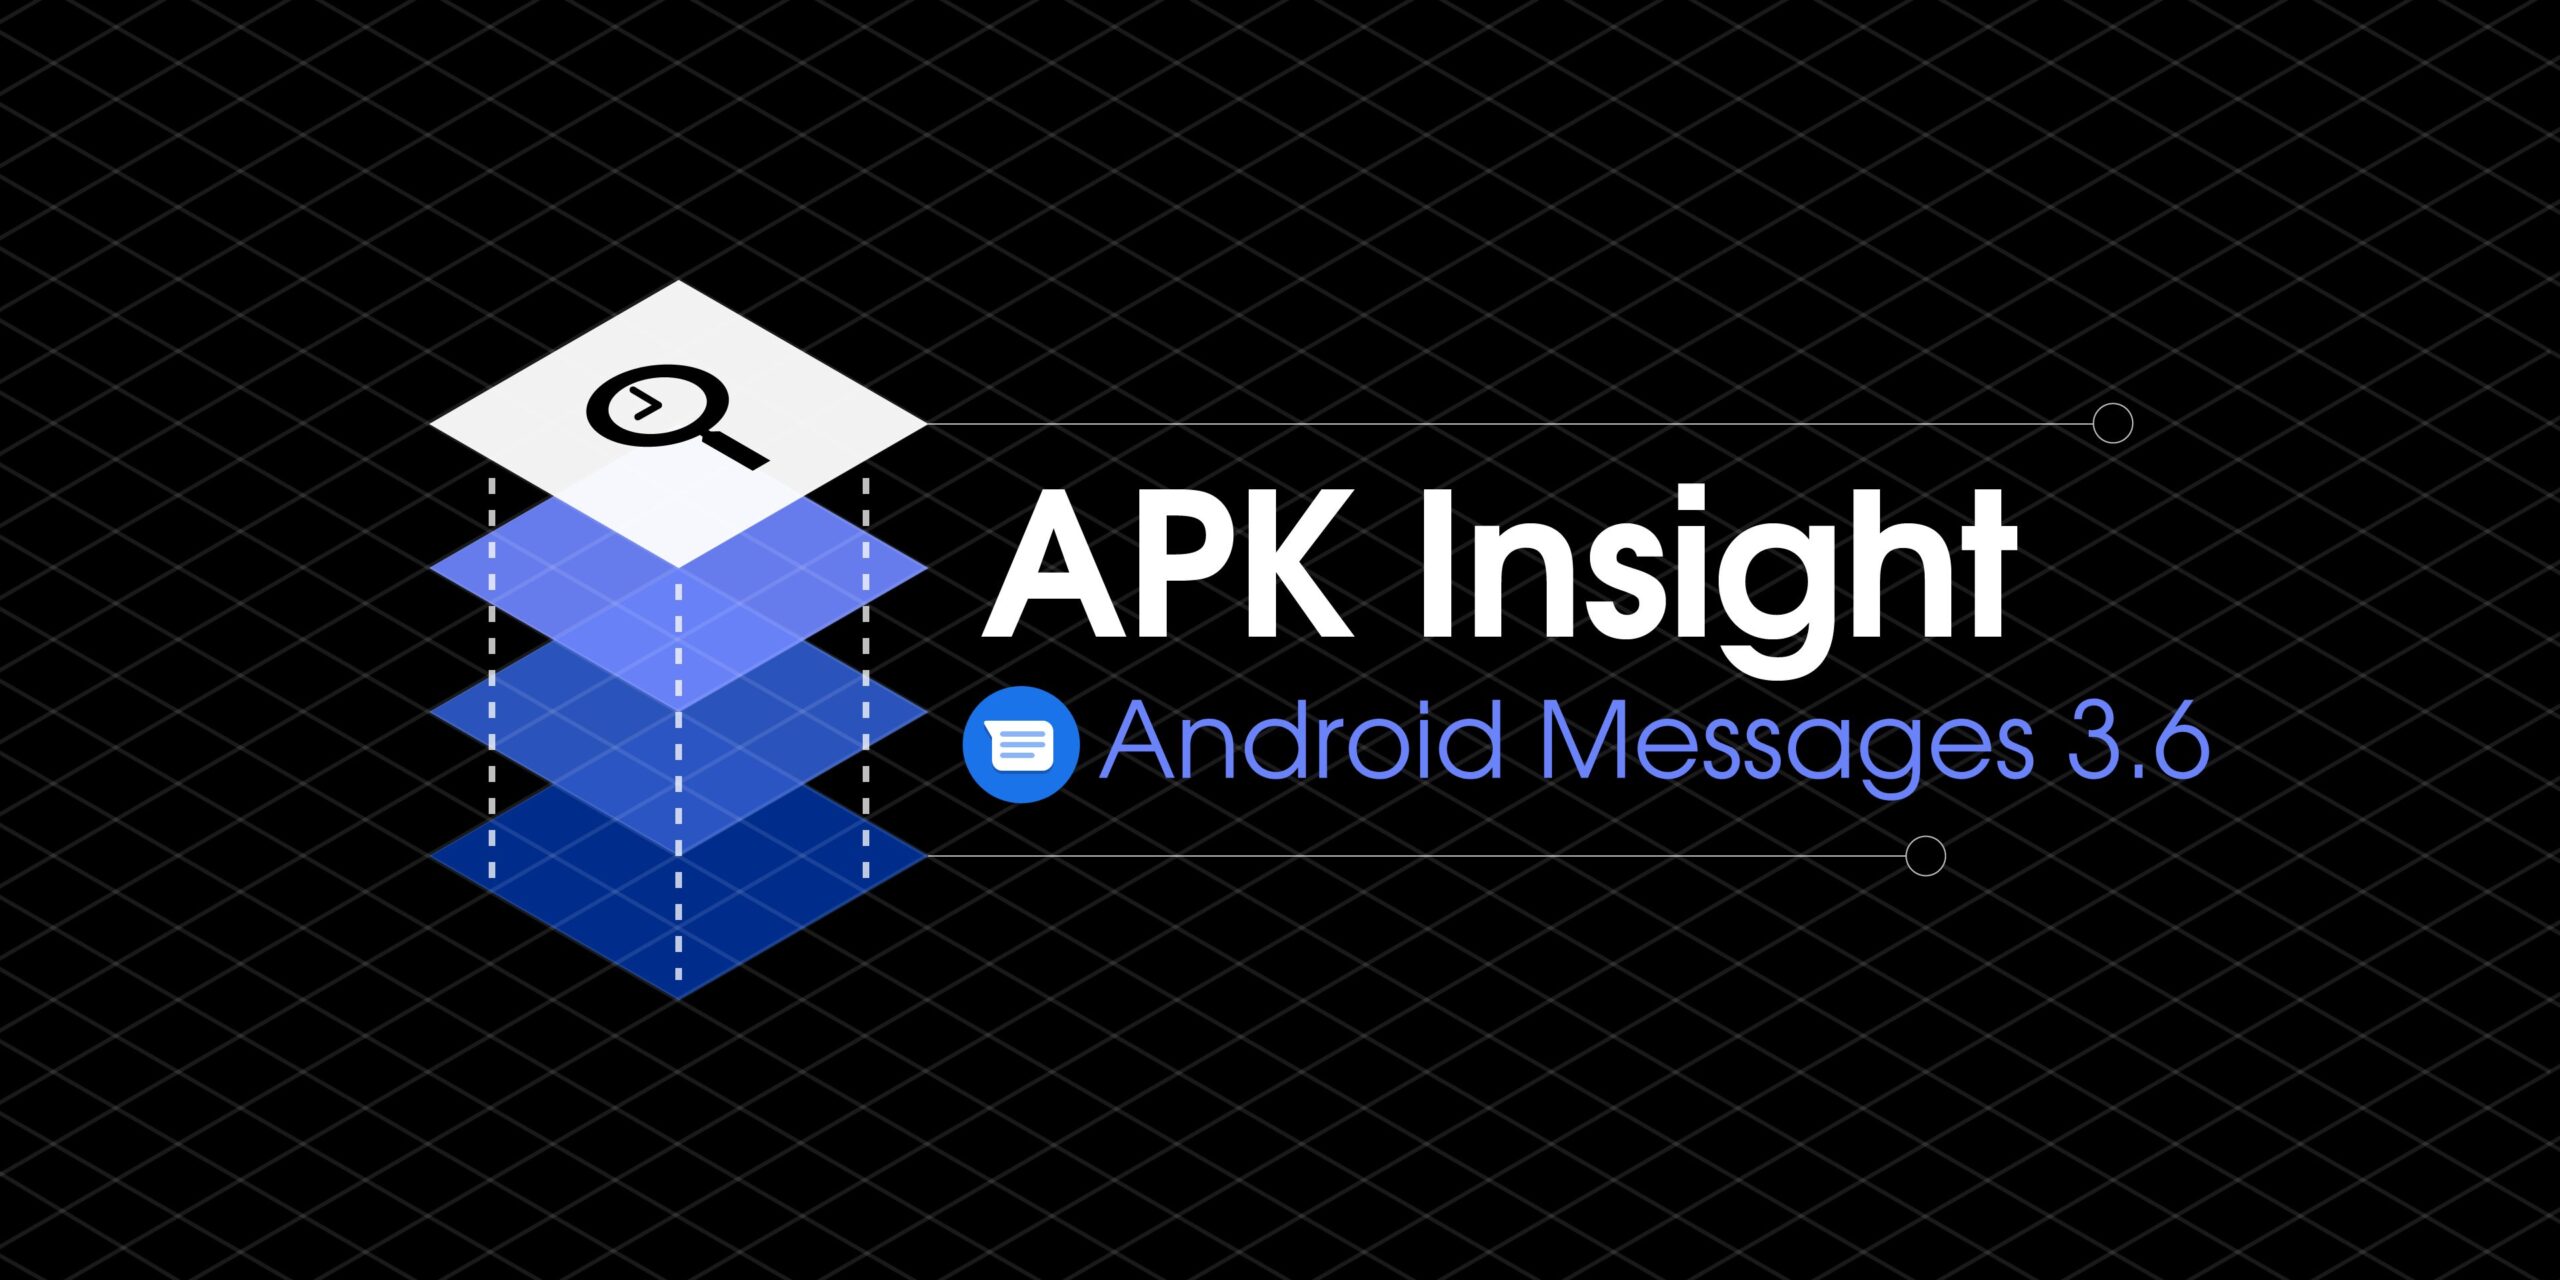 Mensagens do Android 3.6 renova a pesquisa, atualiza o ícone Material e prepara o compartilhamento de contatos [APK Insight]